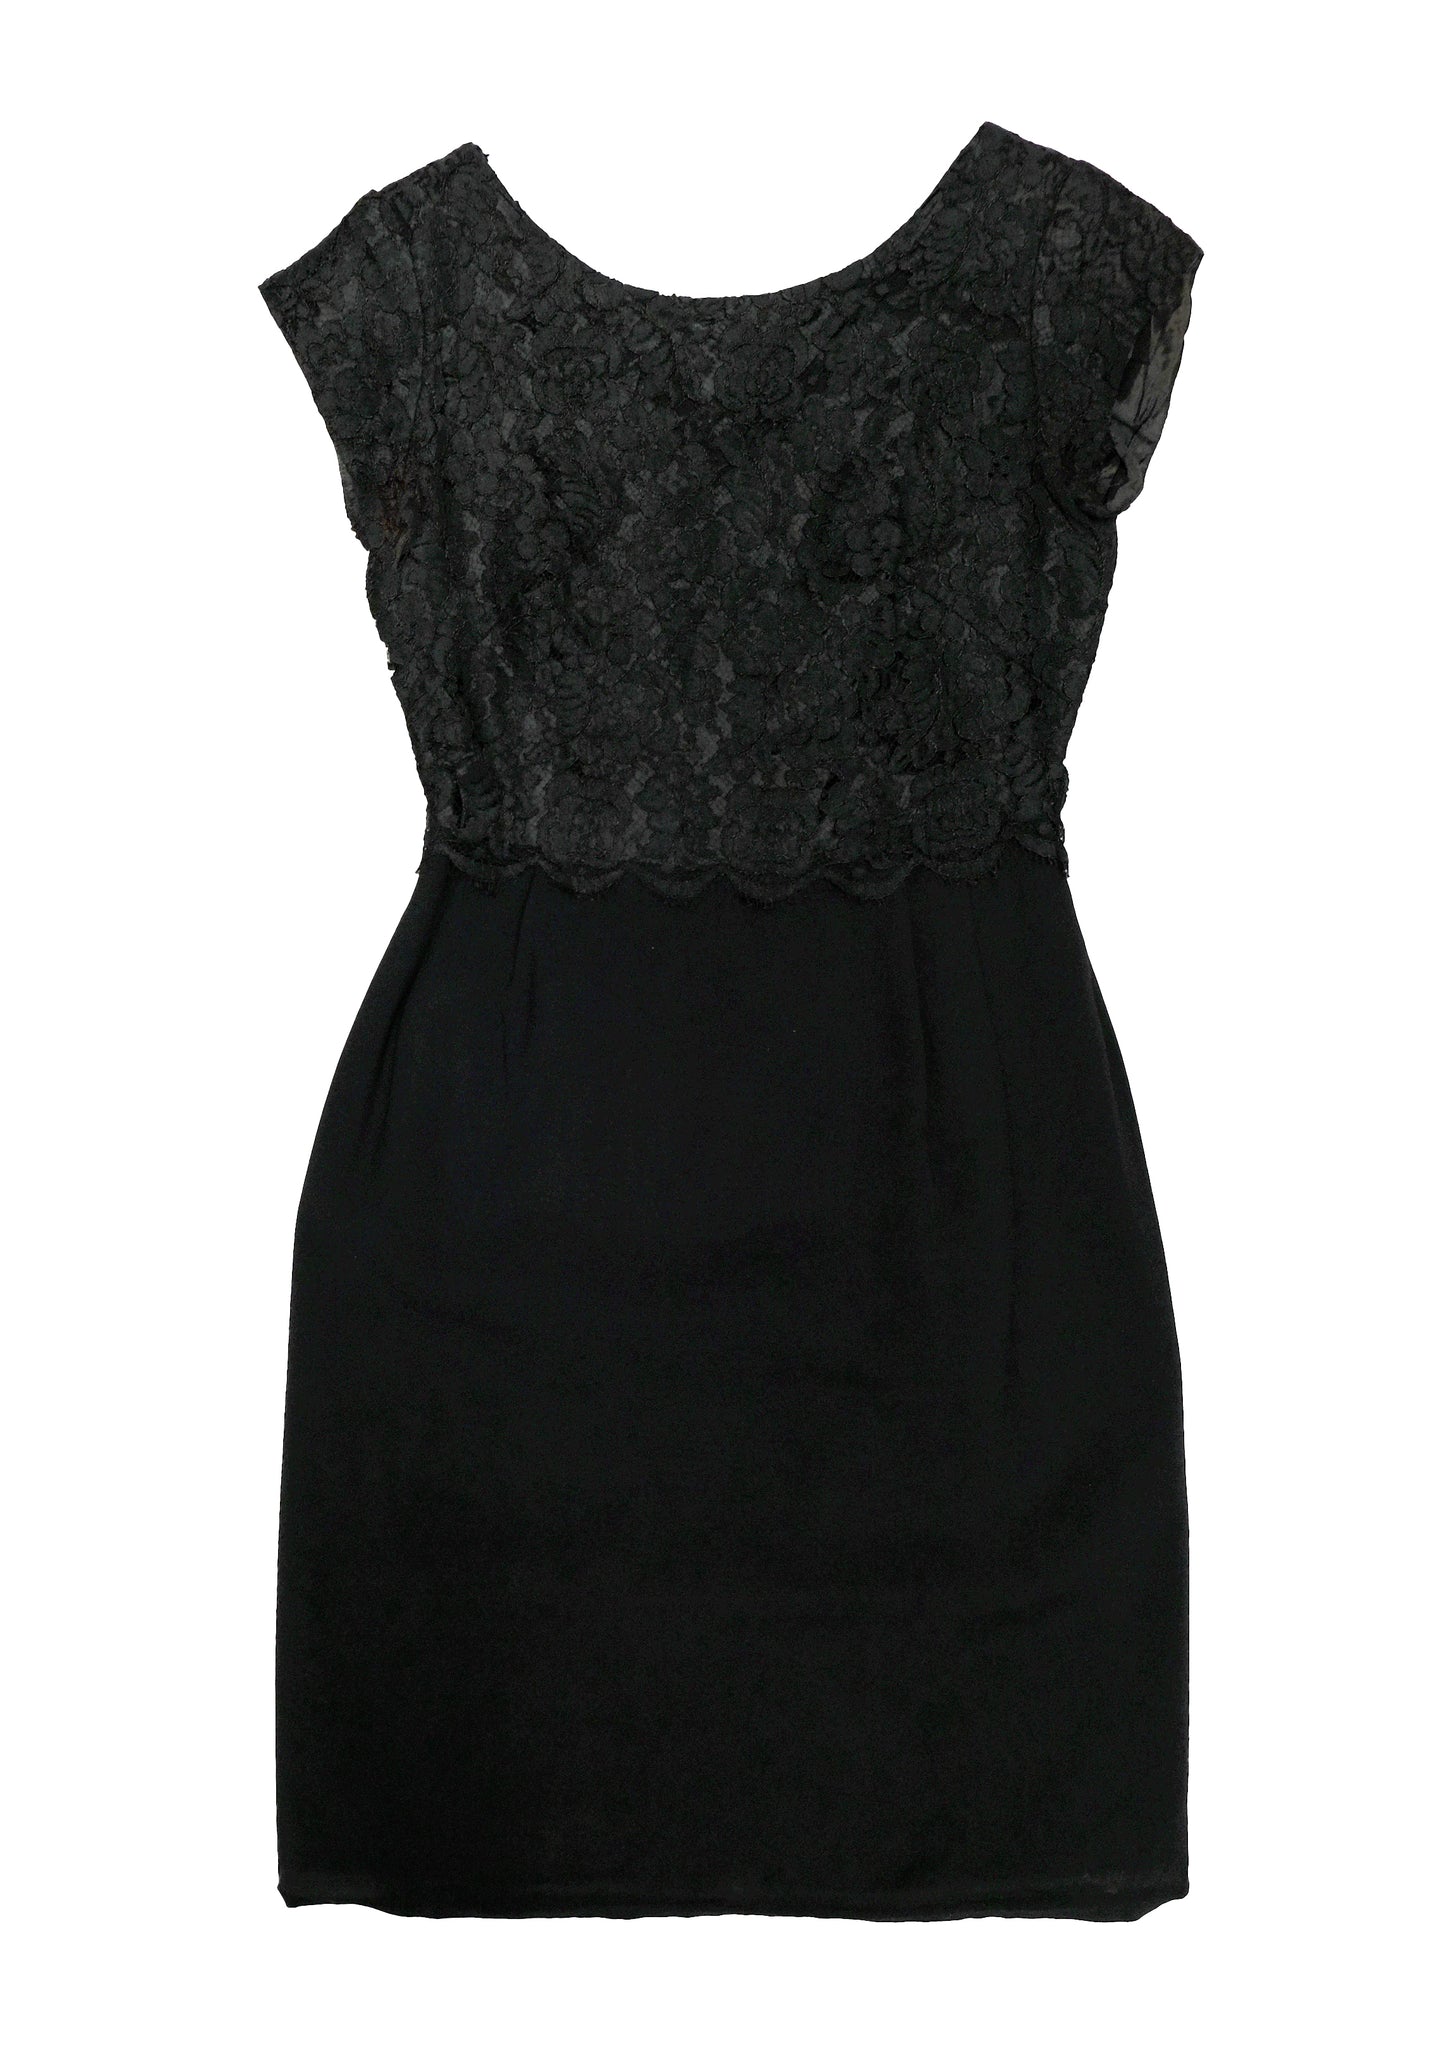 Vintage Little Black Dress with Lace Bodice, UK8 – Menage Modern Vintage